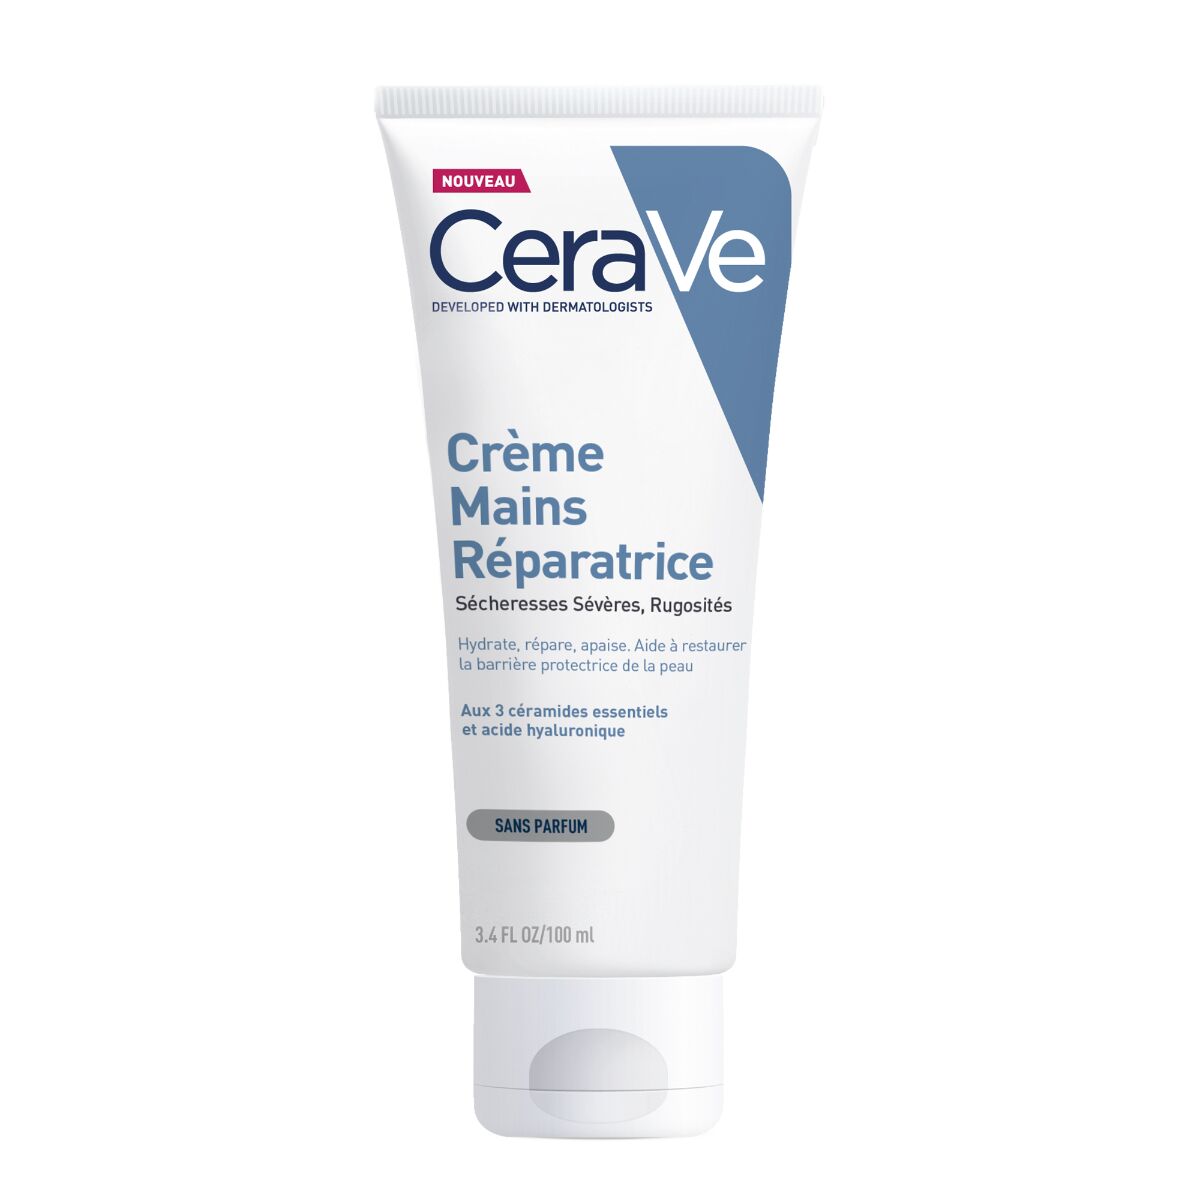 CeraVe Crème Mains Réparatrice, 100ml